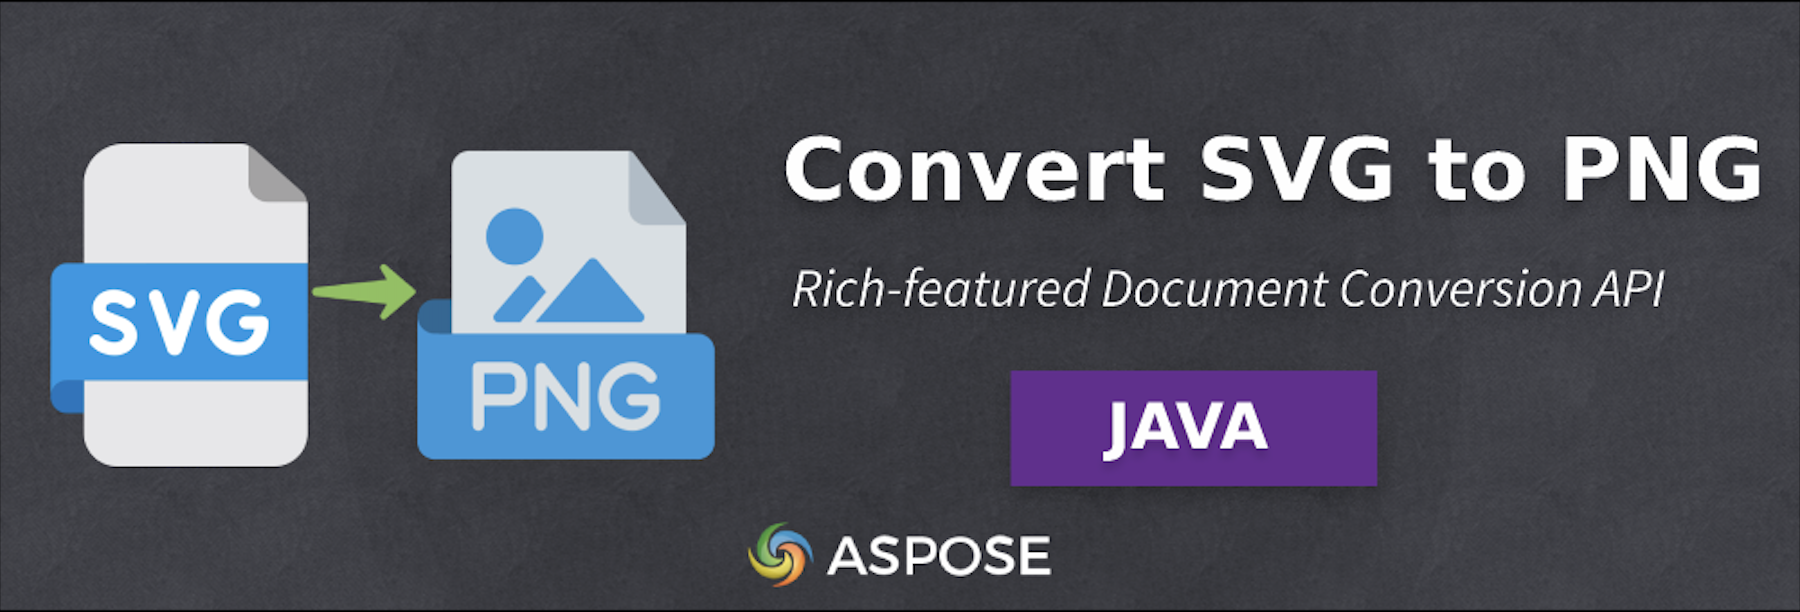 Converti SVG in PNG in Java - Software di conversione immagini